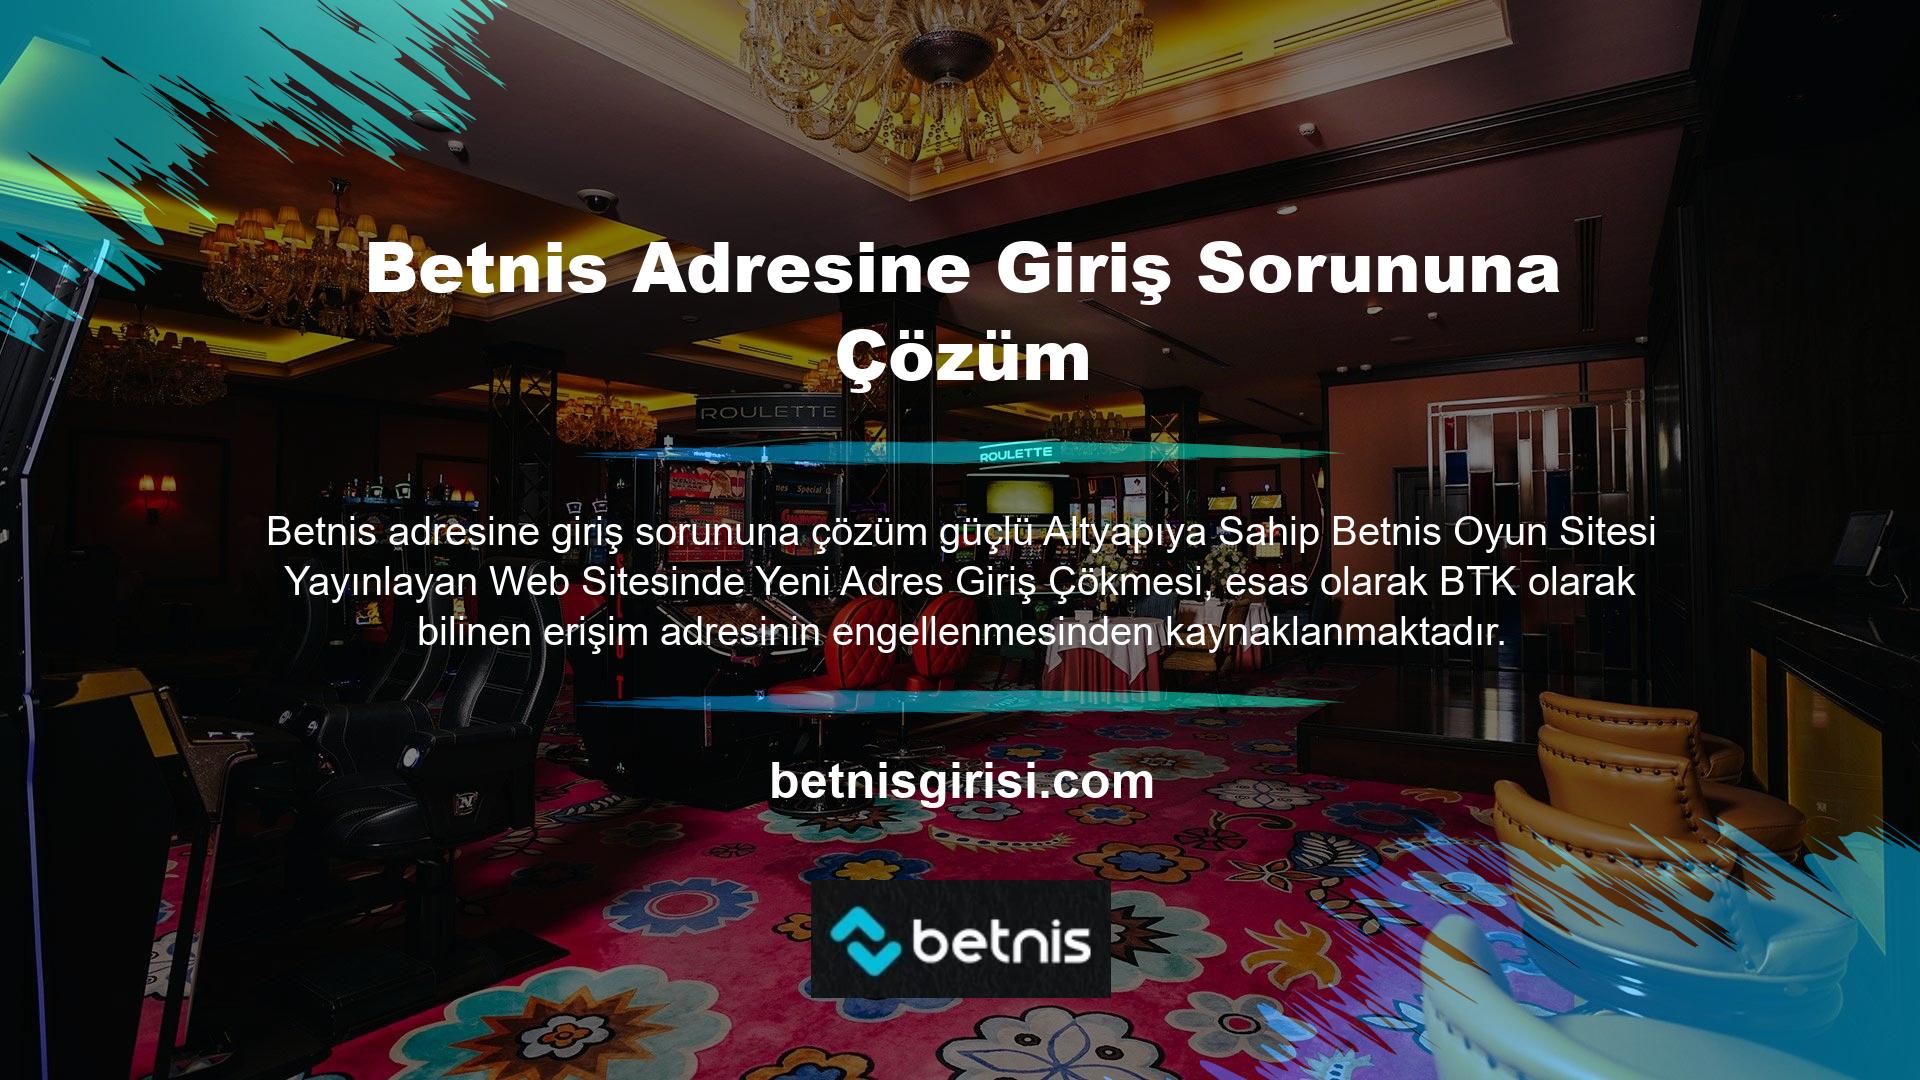 Uluslararası lisanslı ve güvenilir bir online casino sitesi olmasına rağmen Betnis yeni adresi ve bahisçilere erişimi, Türkiye'de online casino sitelerinin yasaklanması nedeniyle engellendi